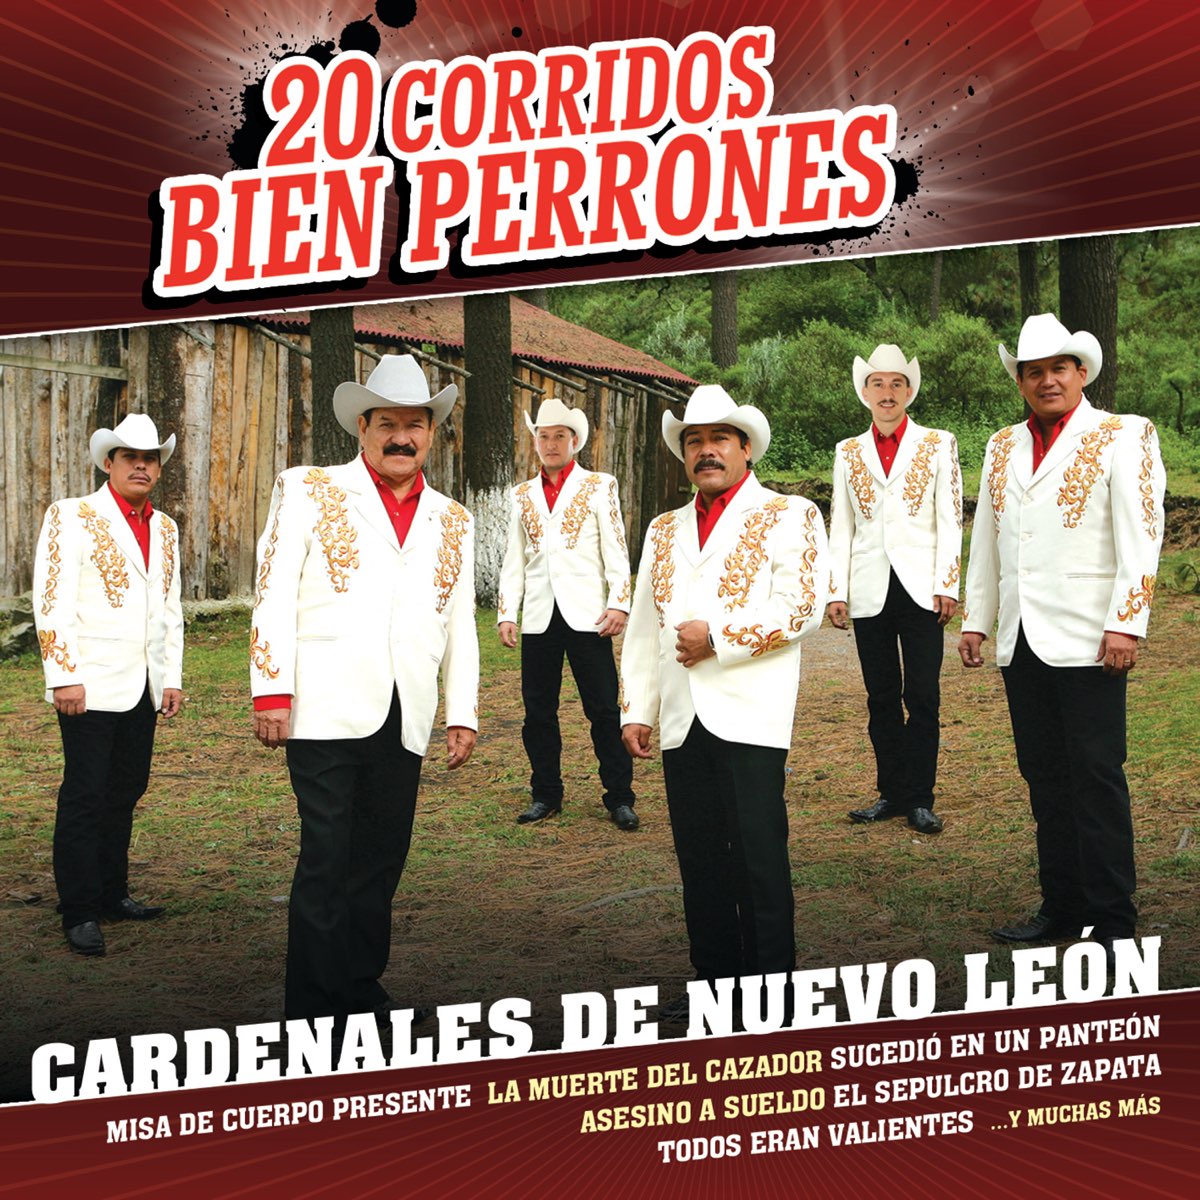 20 Corridos Bien Perrones - Album by Cardenales de Nuevo León - Apple Music